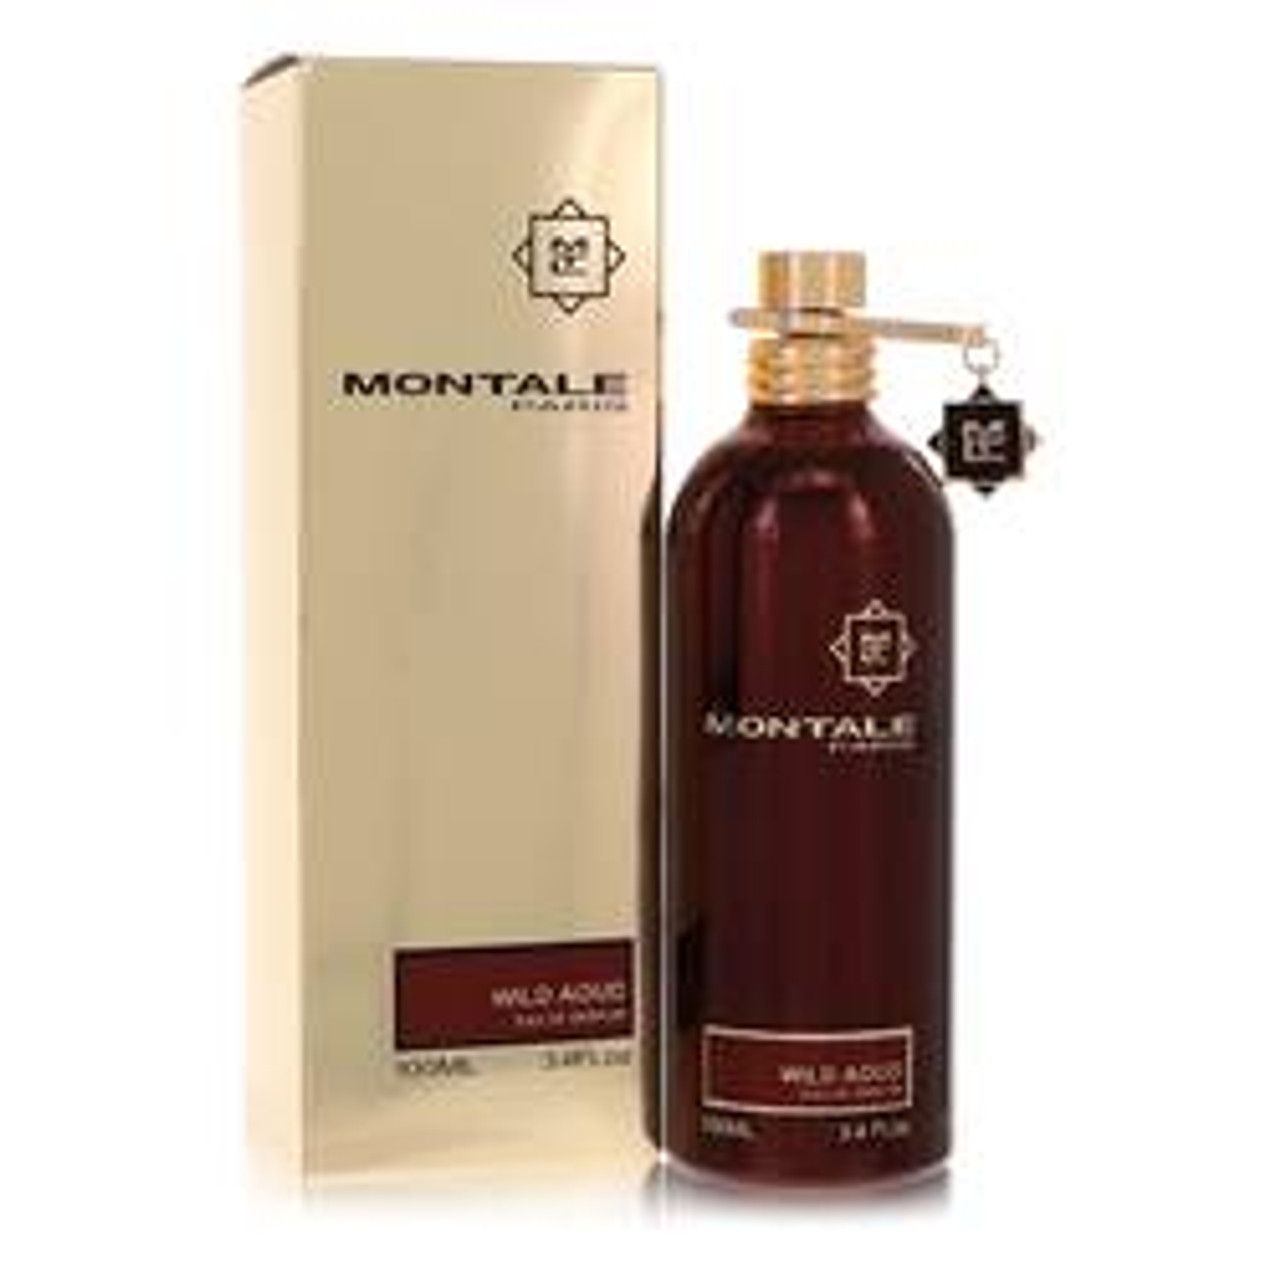 Montale Wild Aoud Perfume By Montale Eau De Parfum Spray (Unisex) 3.4 oz for Women - *Pre-Order